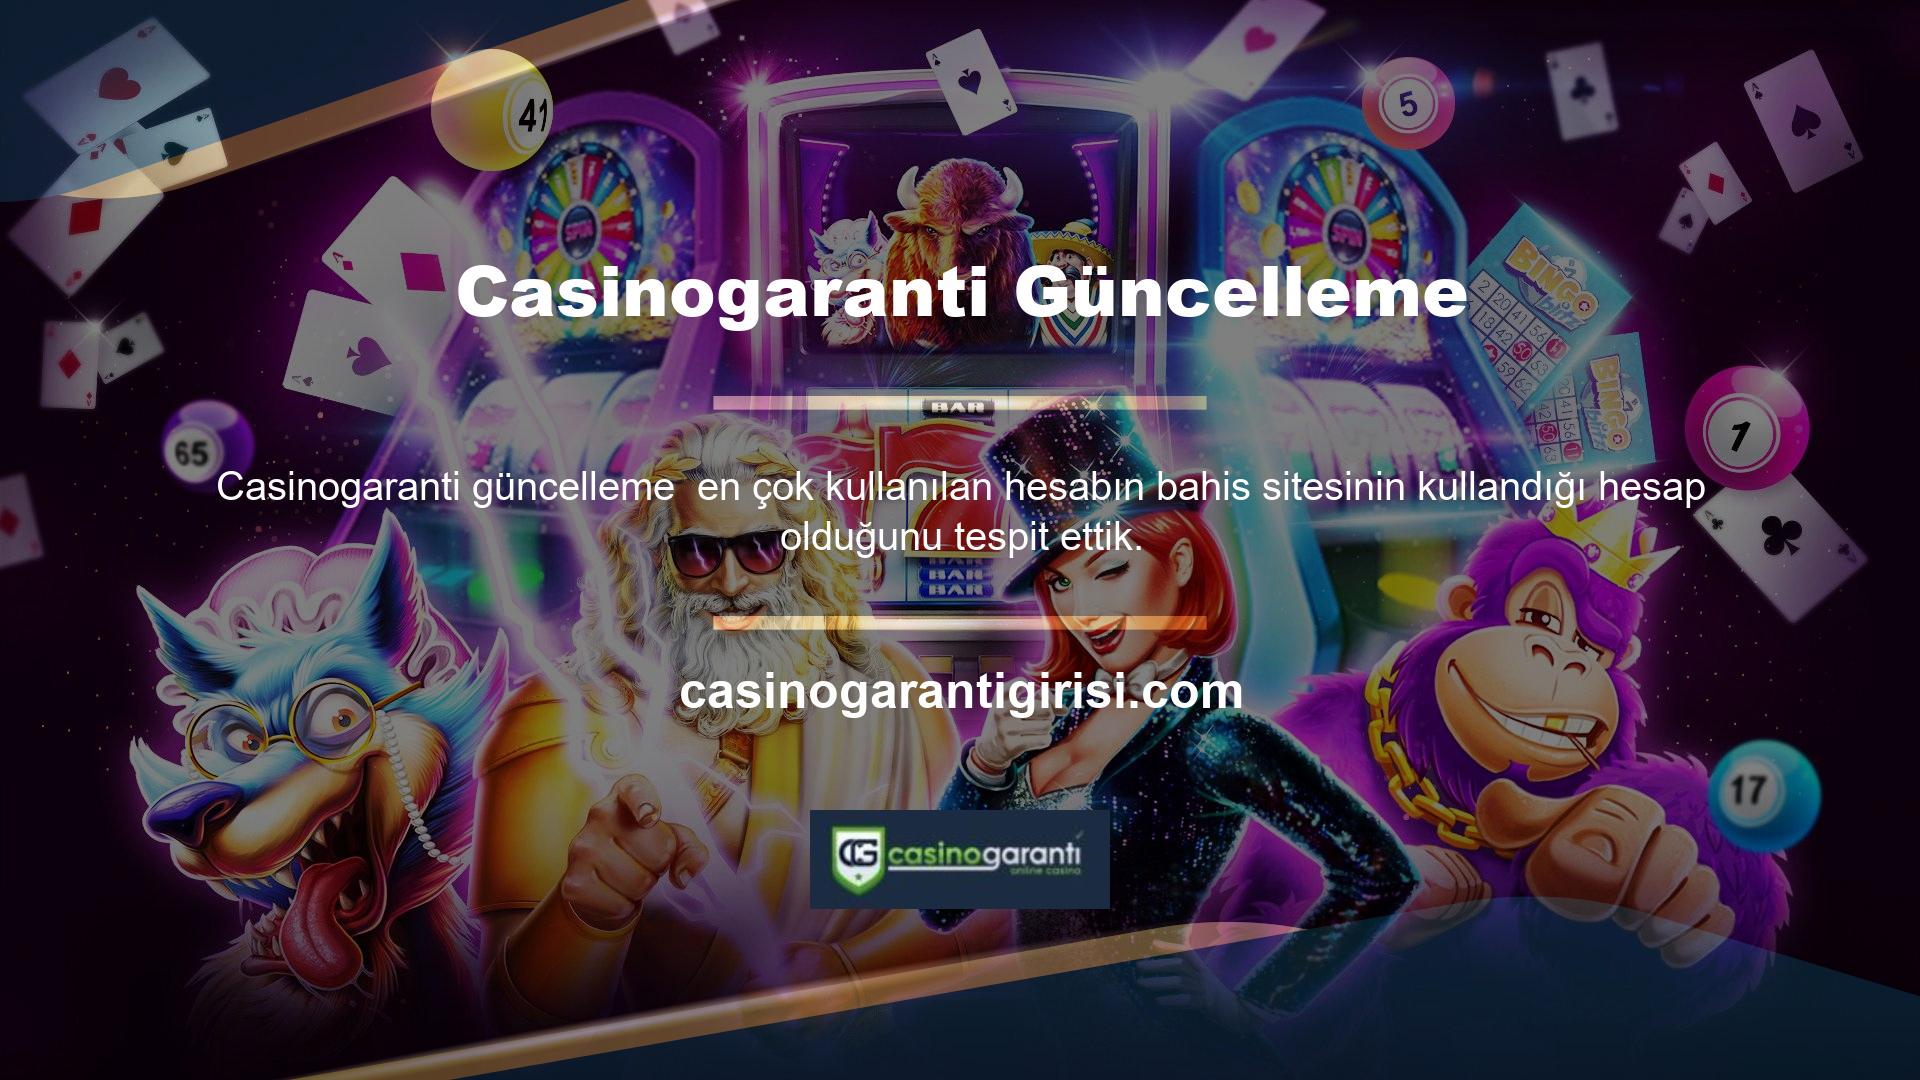 Türkiye'de ise Casinogaranti Twitter hesabını aktif olarak kullanırken kapsamlı adres güncellemeleri paylaşıyor